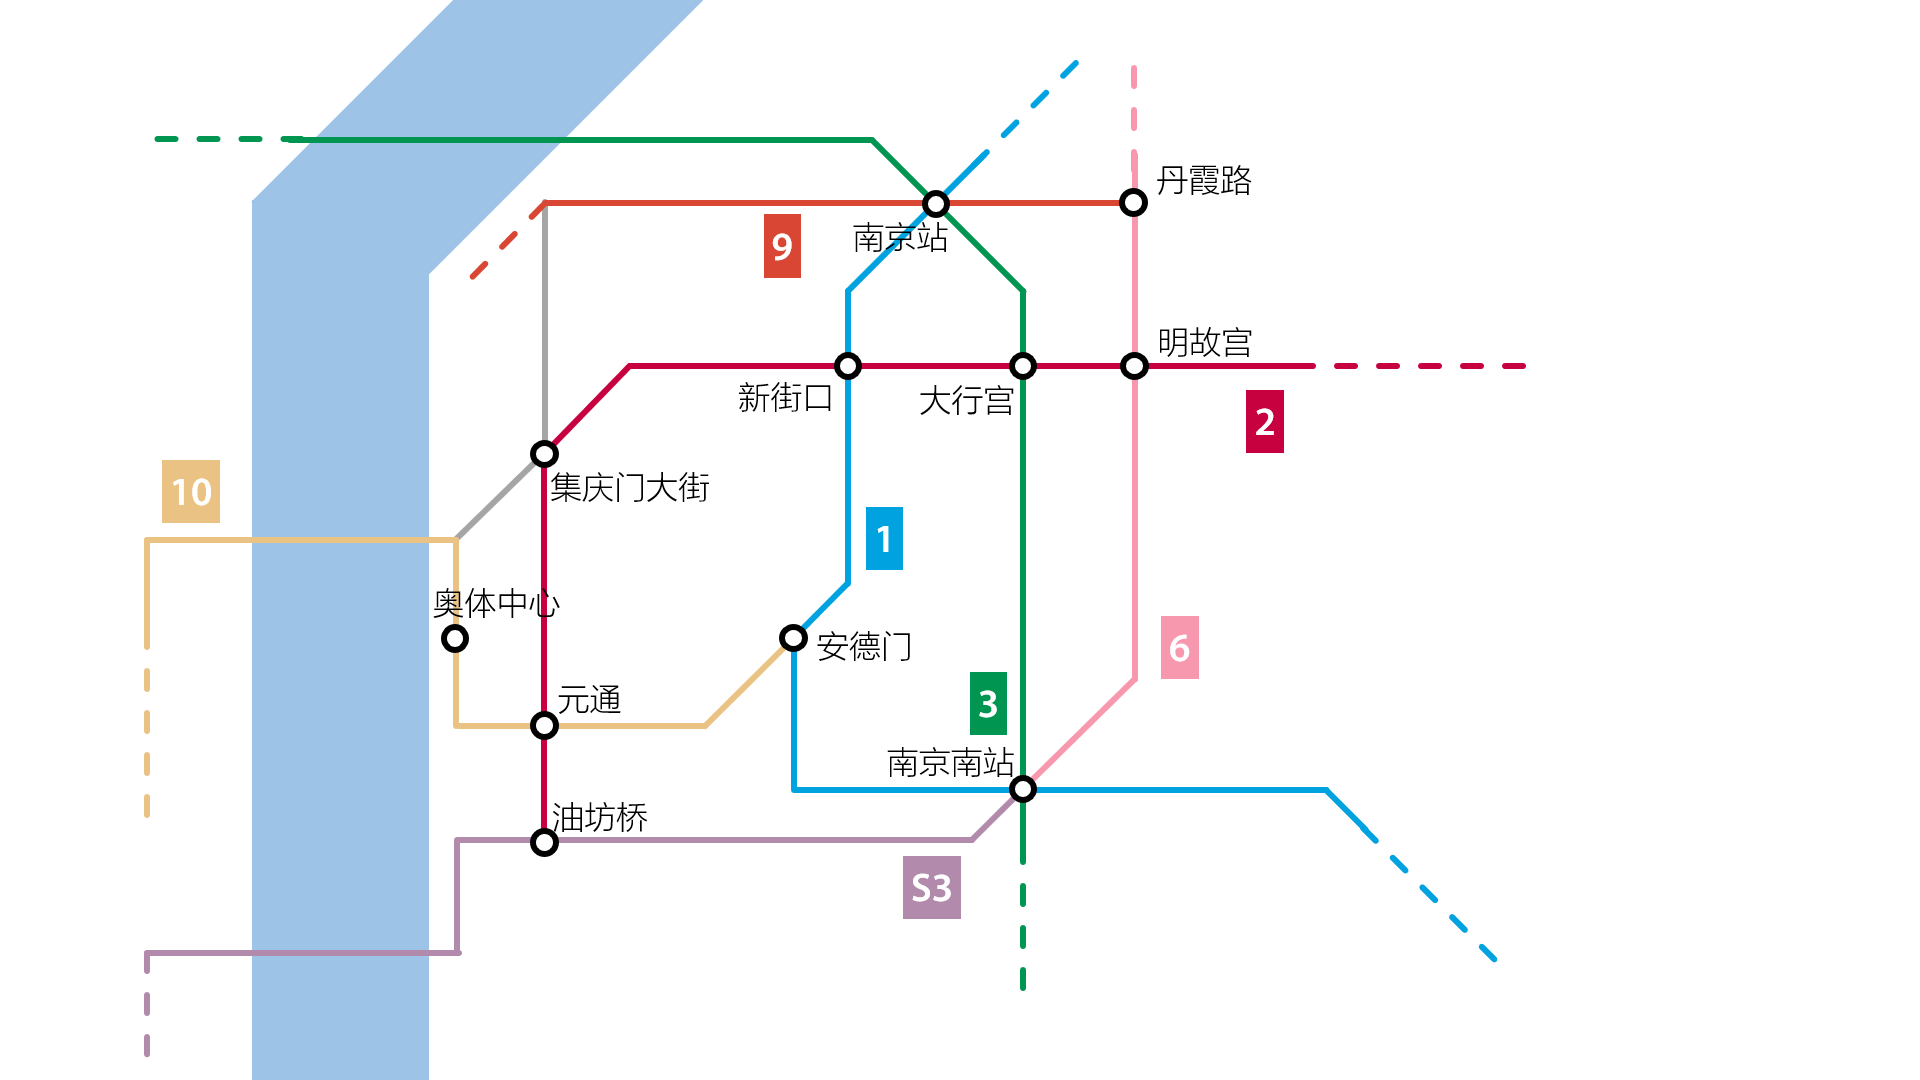 南京地铁2号线东延线图片